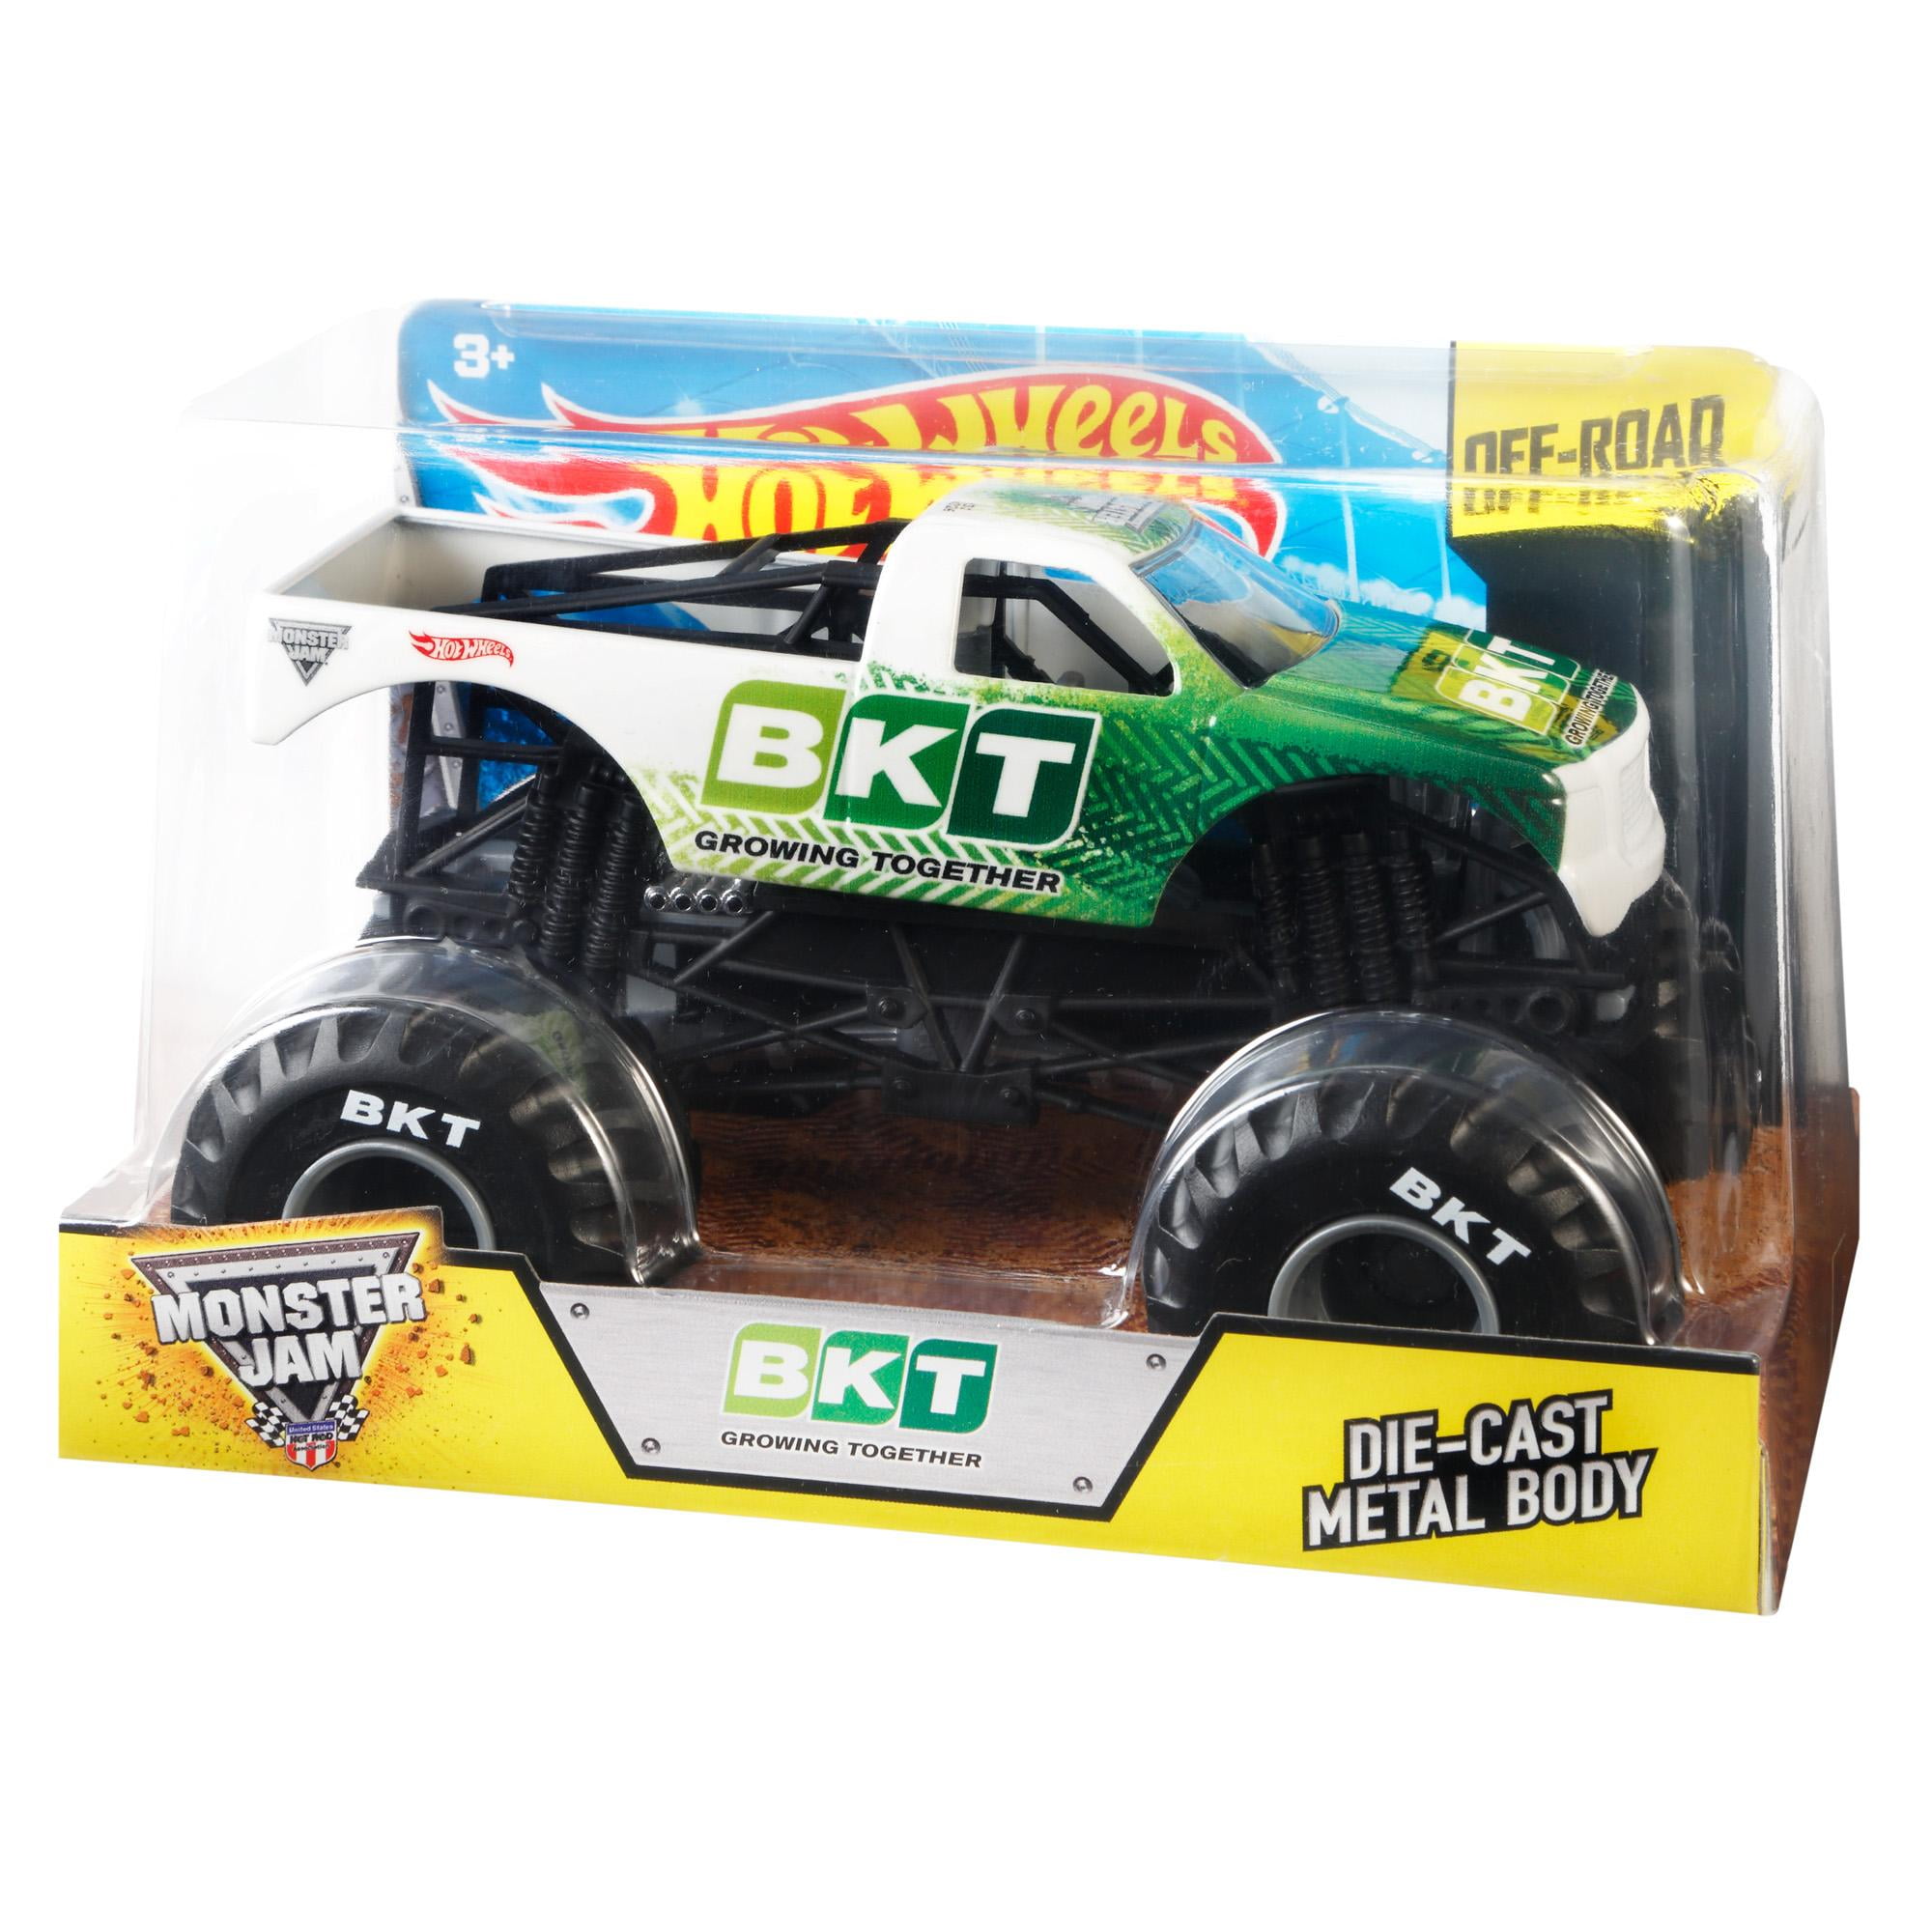 bkt monster truck toy